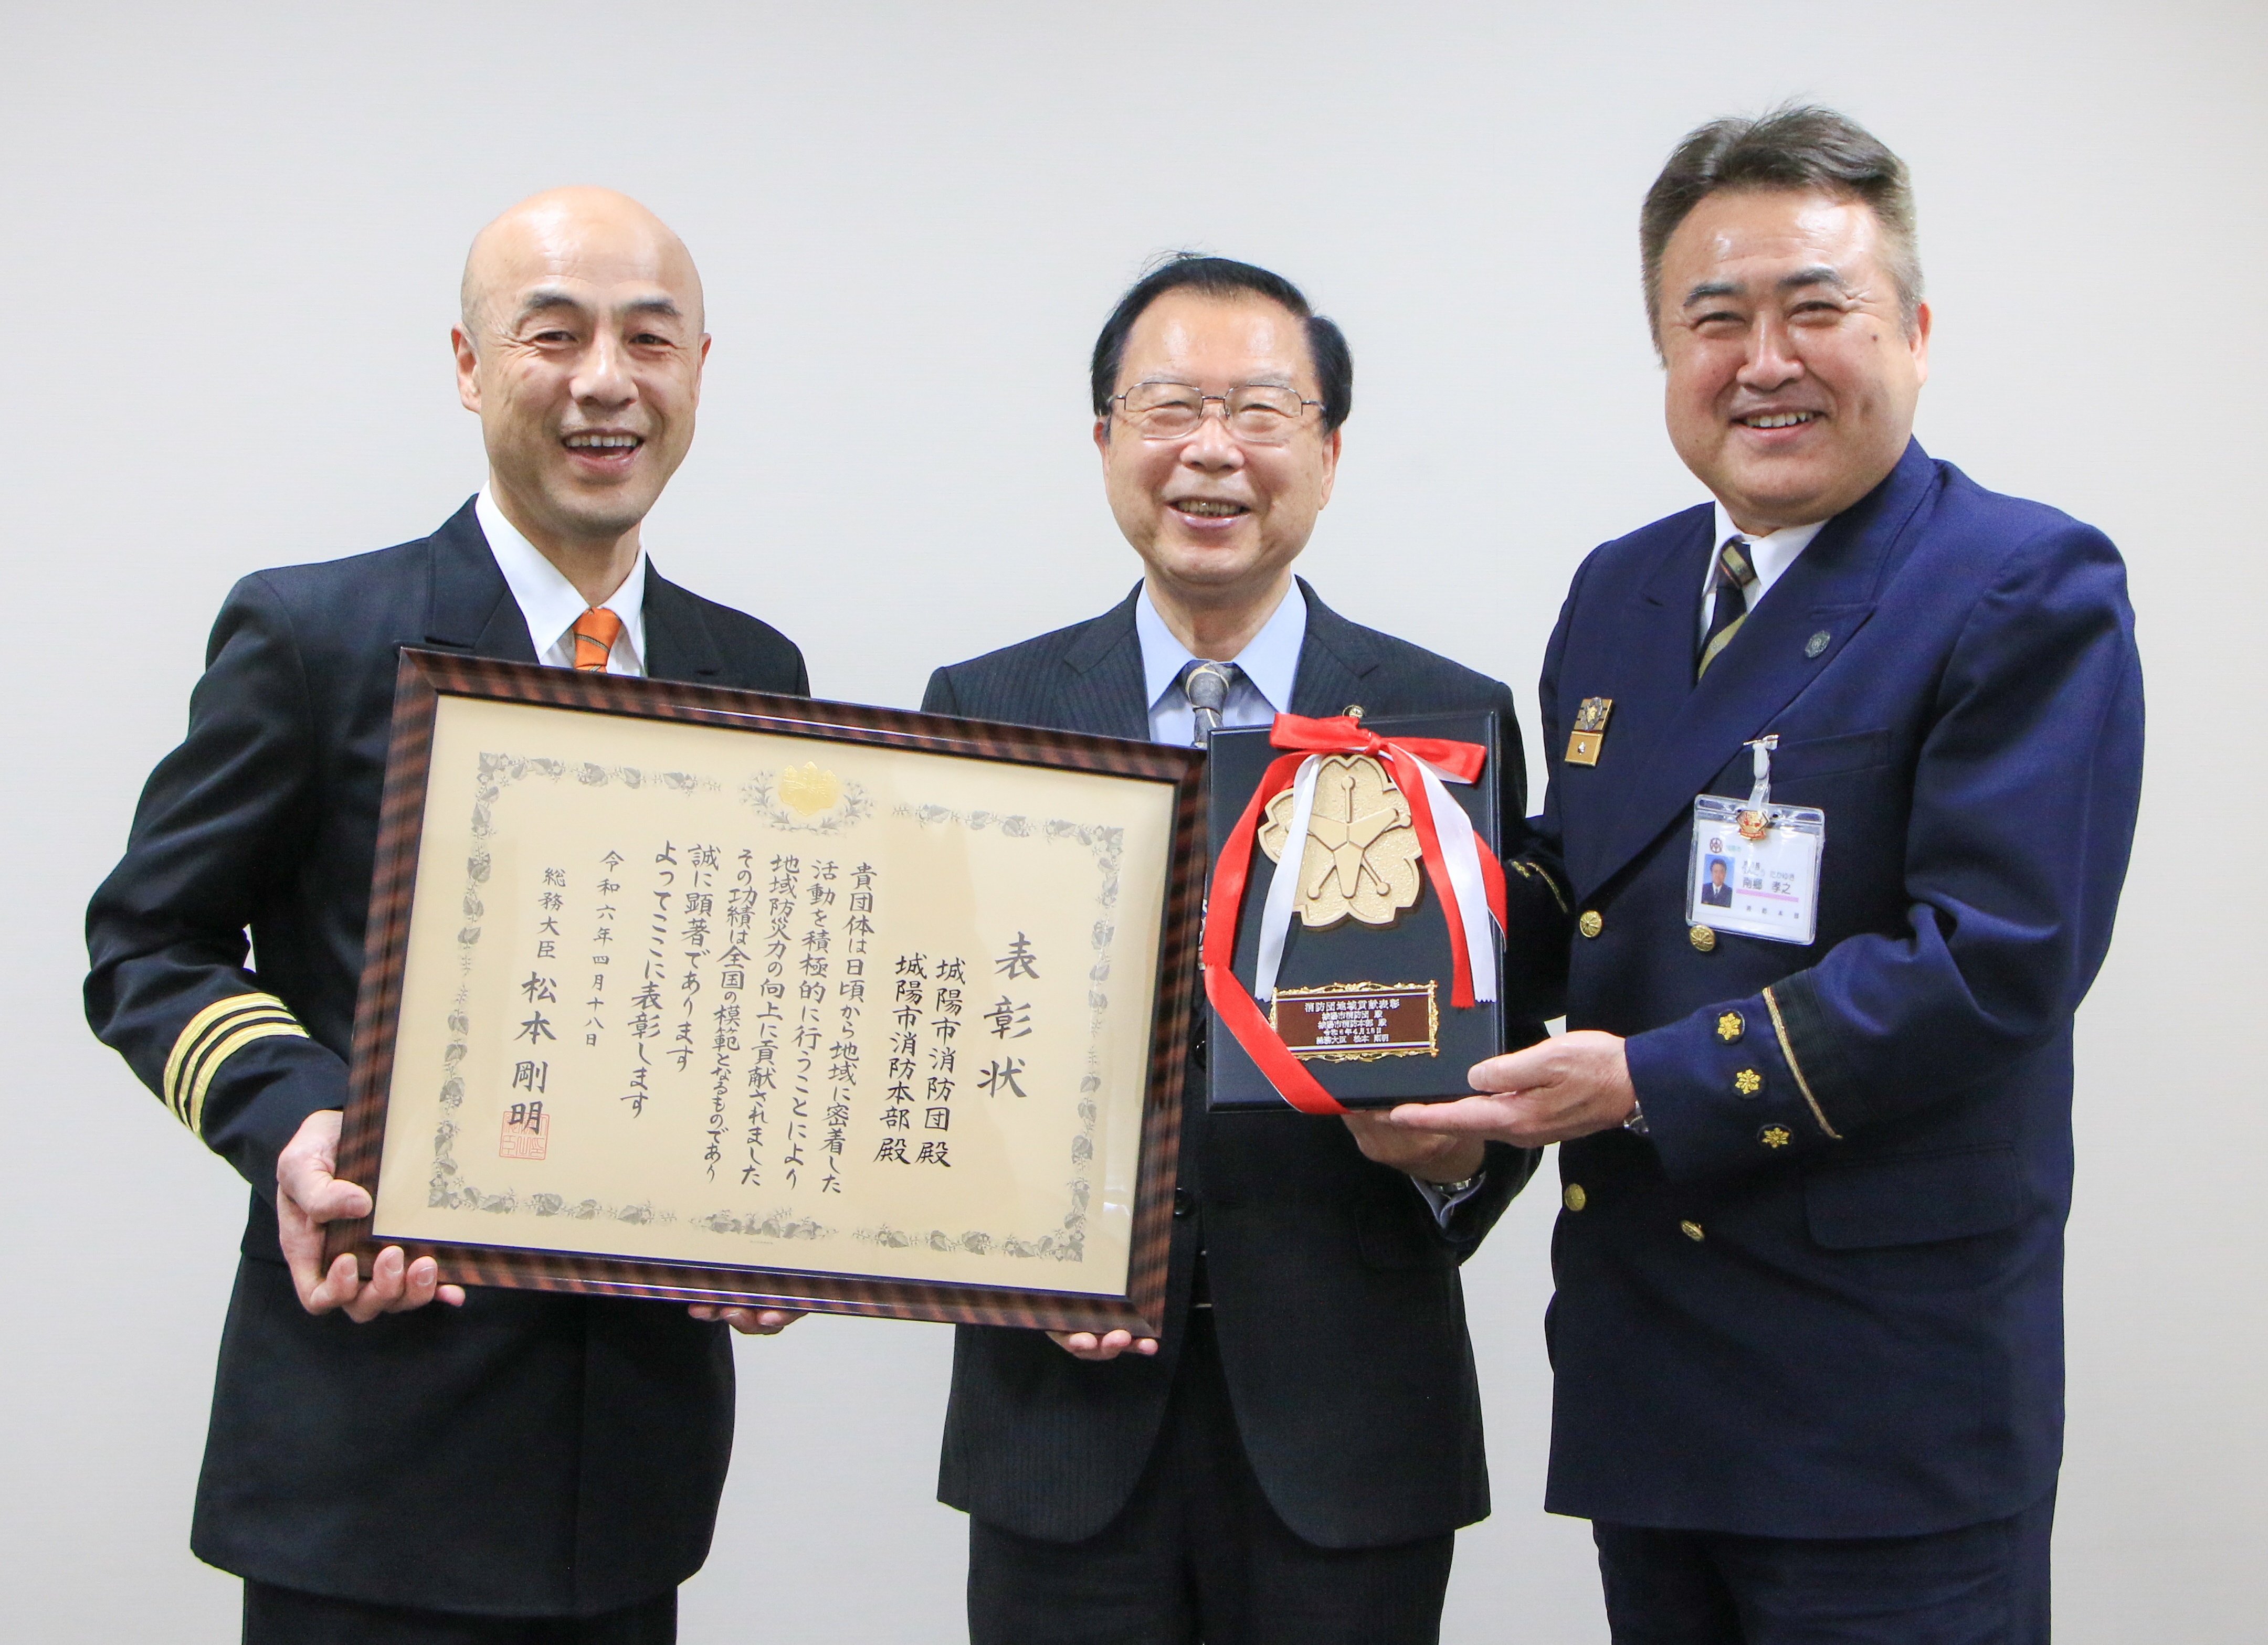 総務大臣からの表彰状と盾を手に笑顔の消防団長、消防長、市長